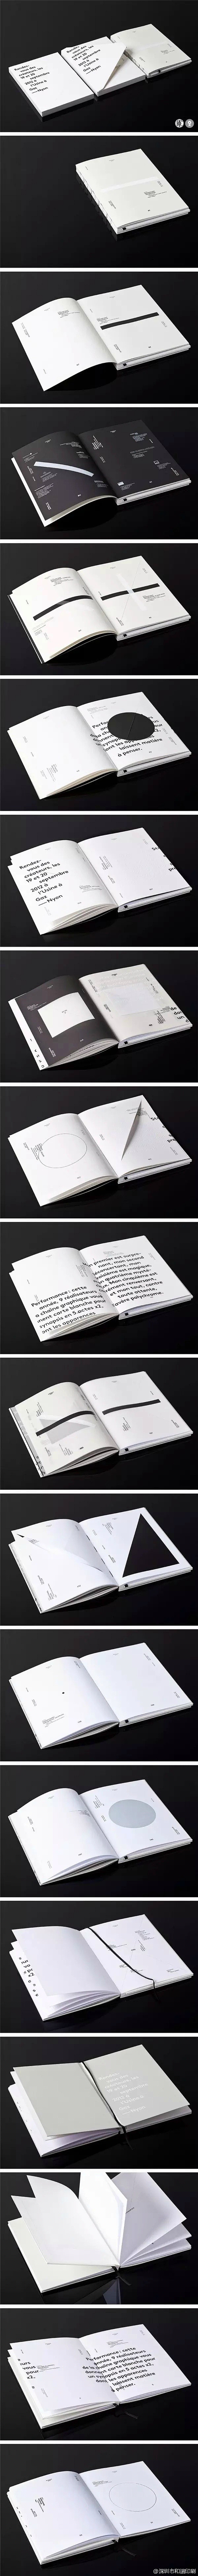 【创意书籍装帧设计】一本优秀的书籍设计，...